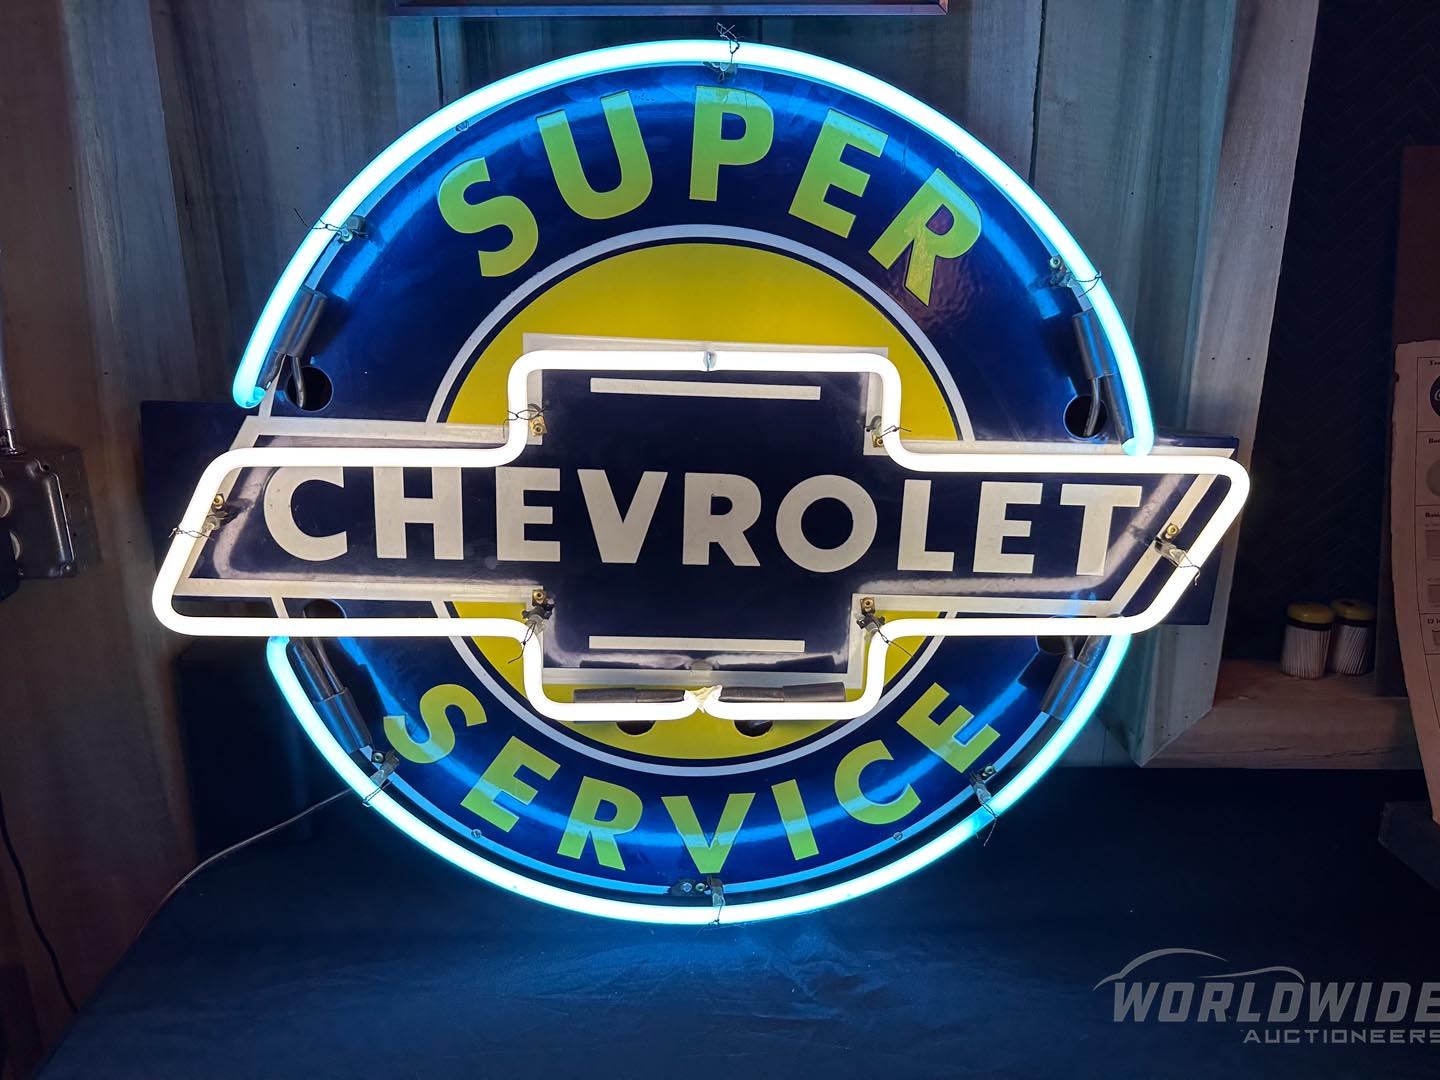  Chevrolet Super Service Retro  Neon Sign 